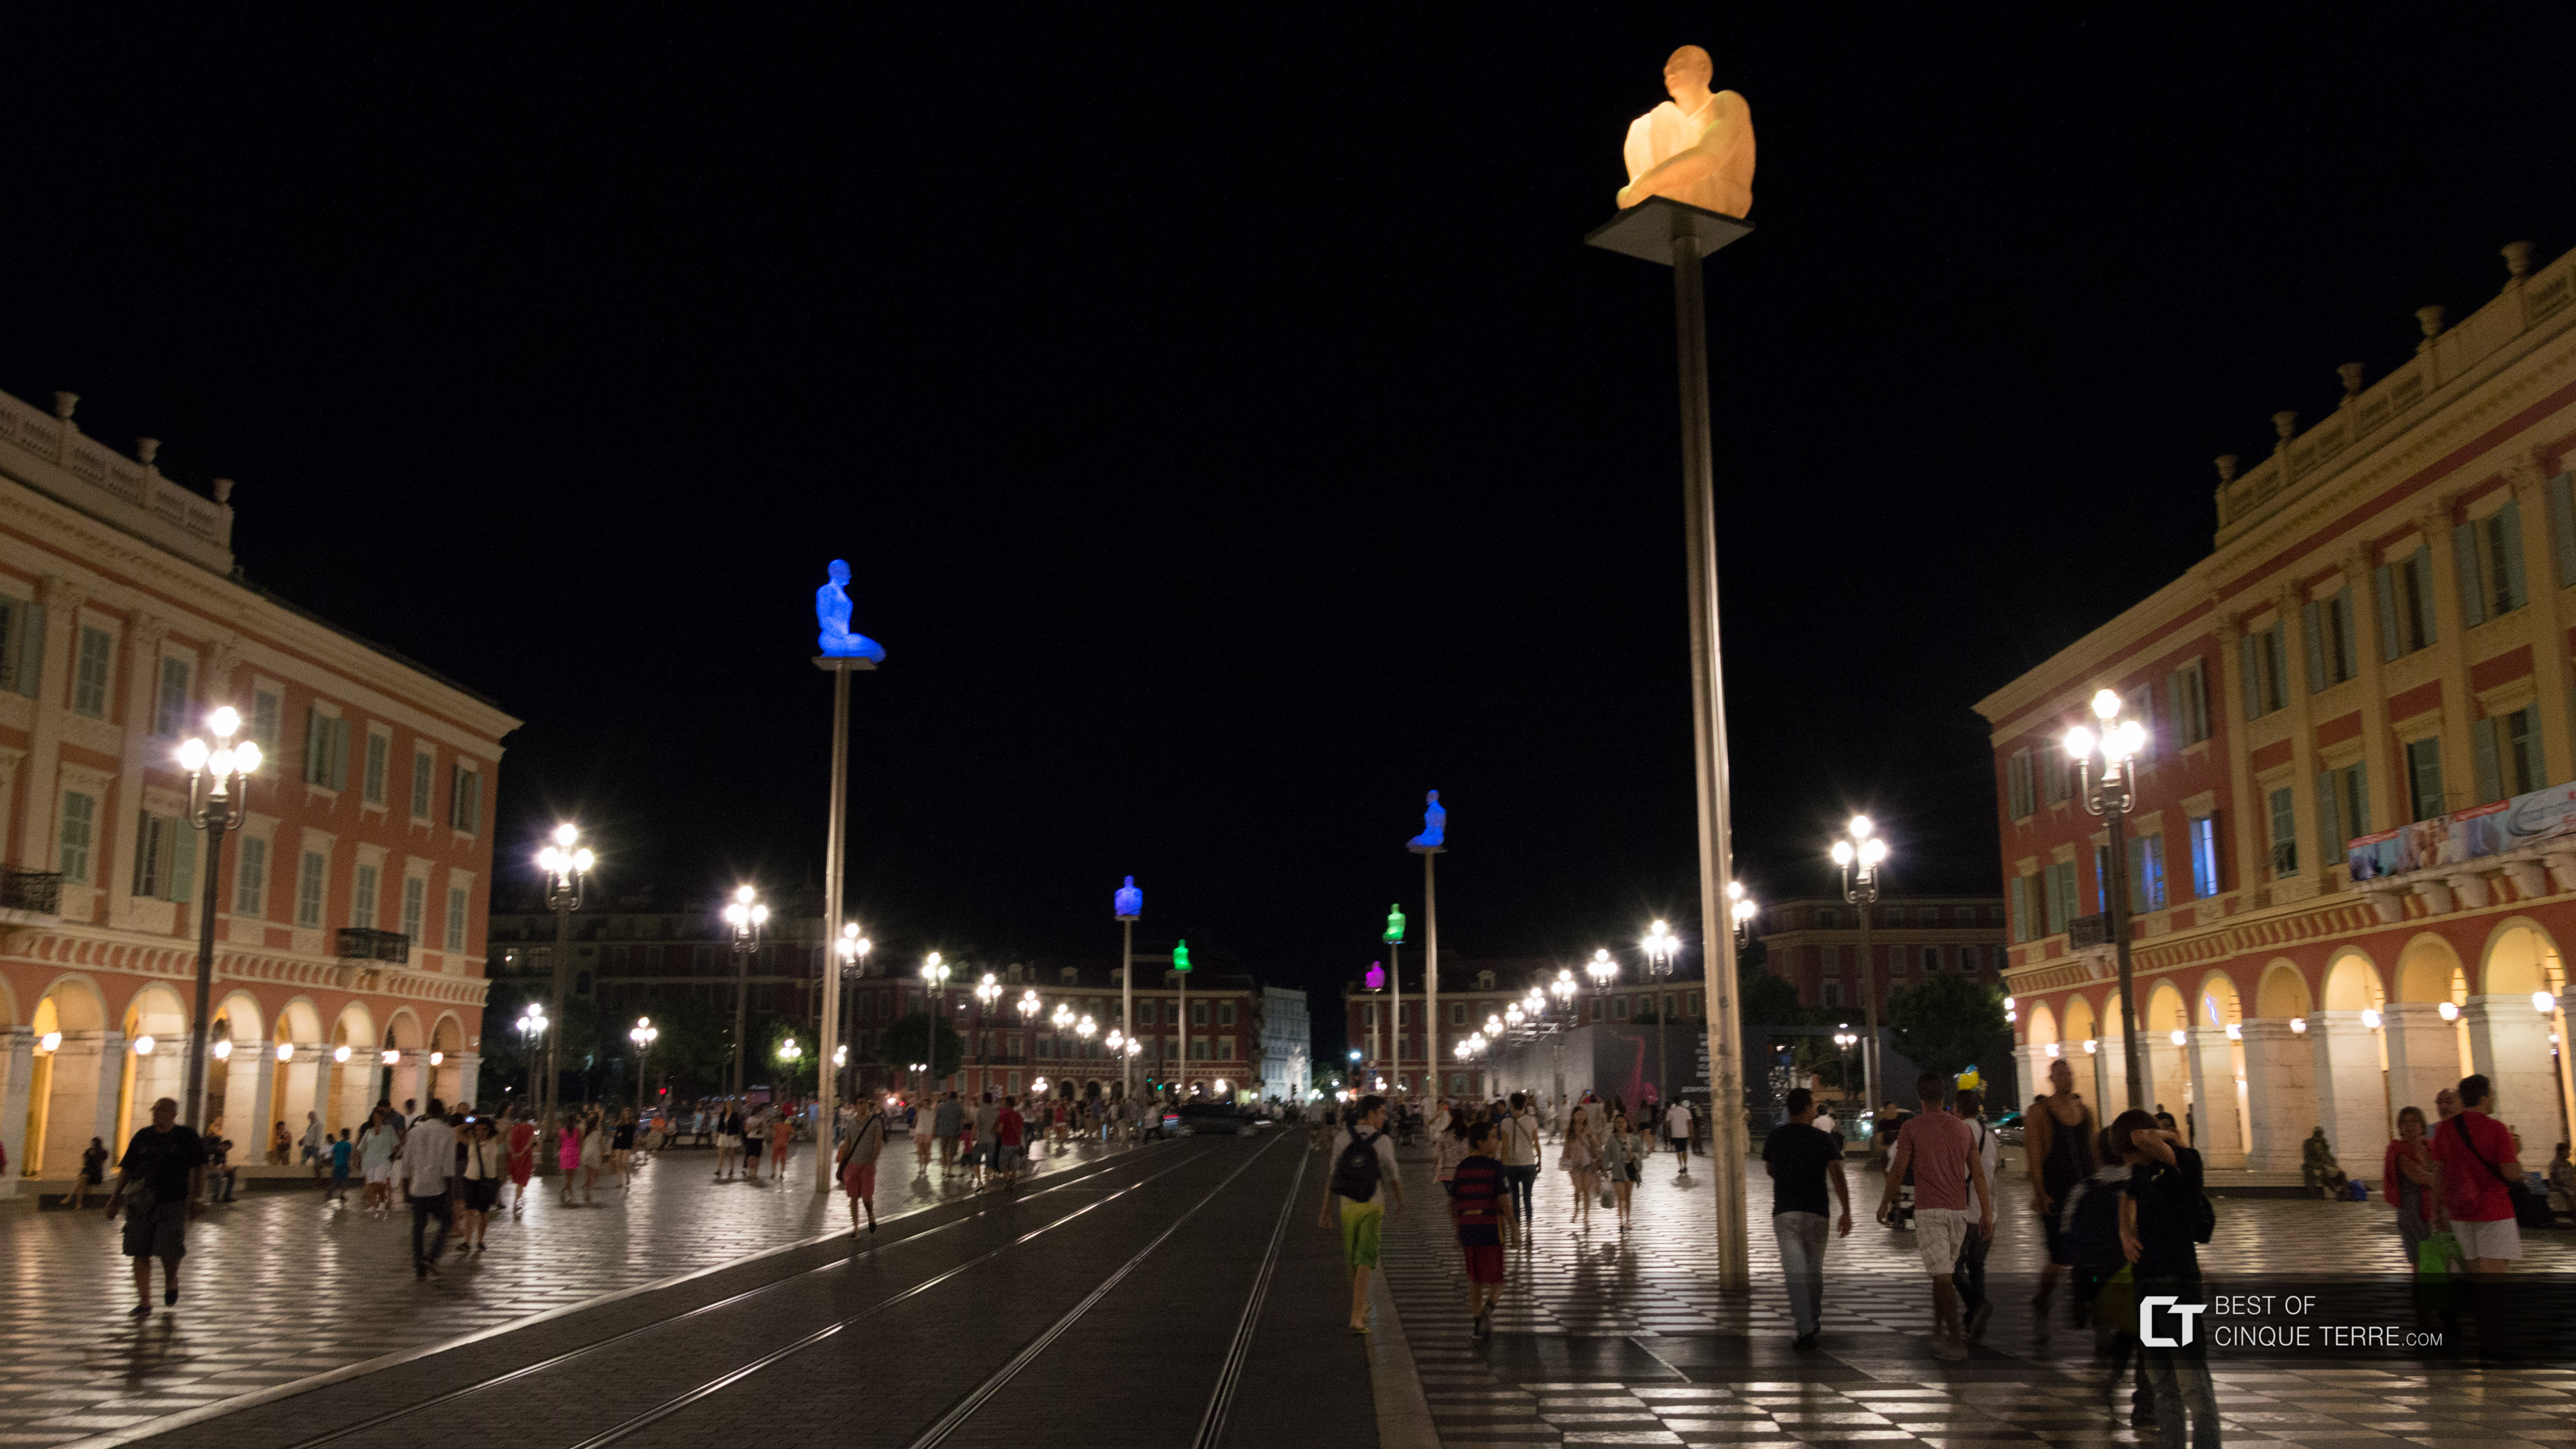 Площадь Массена ночью, Ницца, Франция